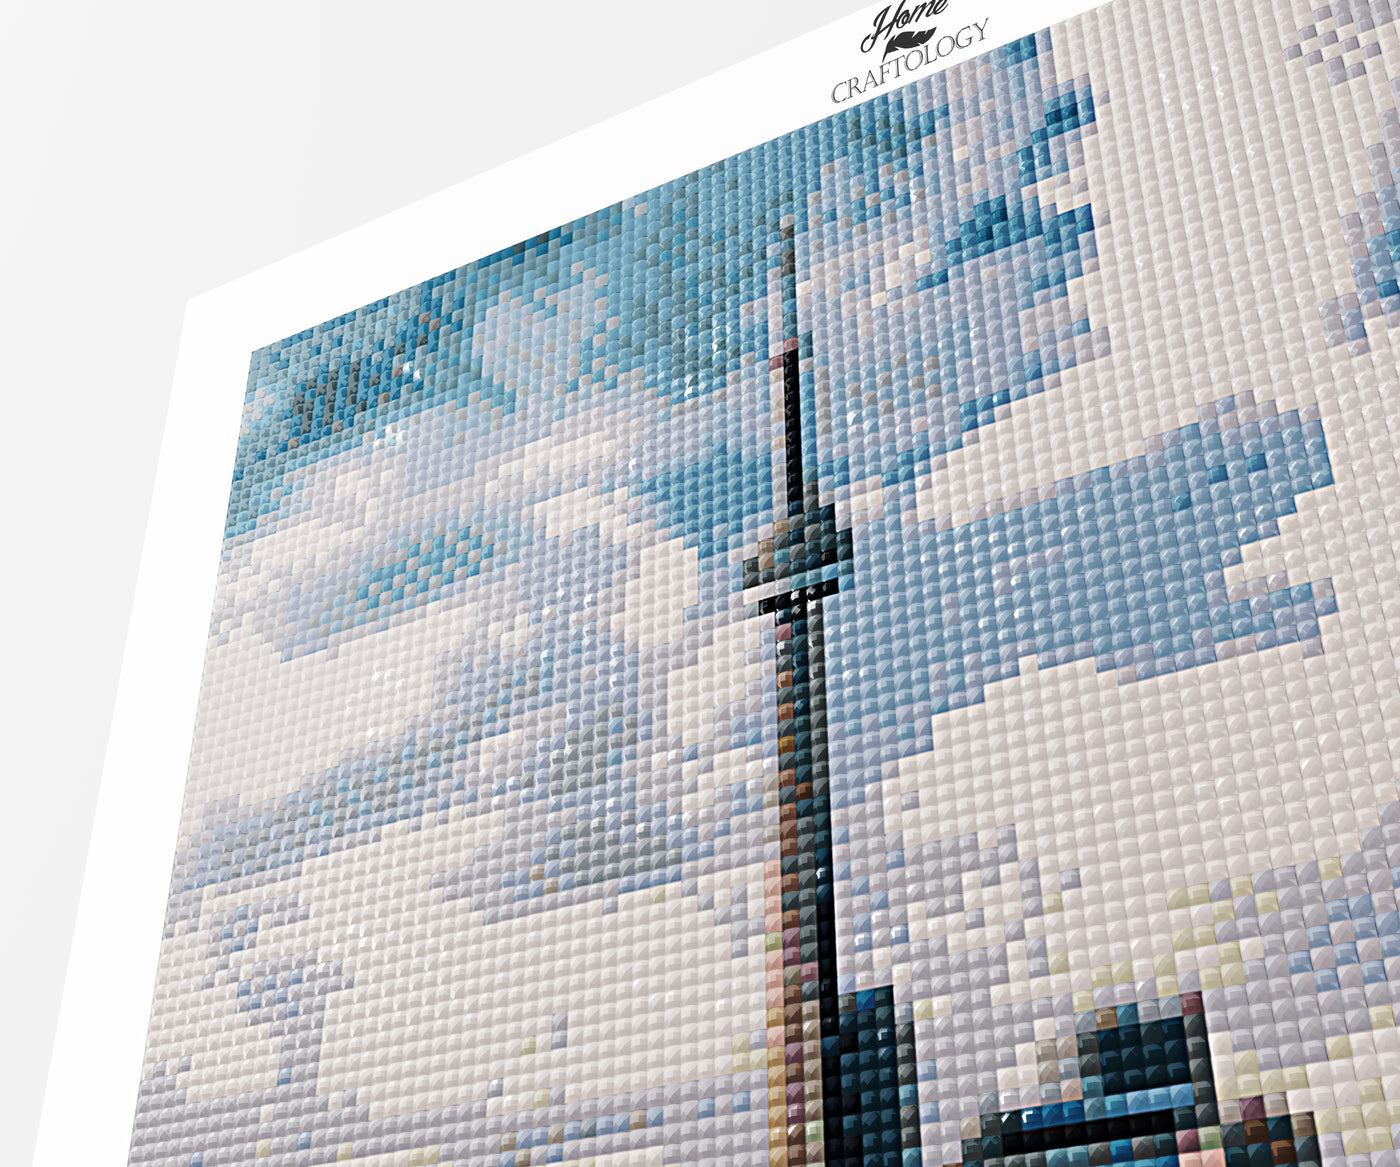 Toronto Skyline - Premium Diamond Painting Kit